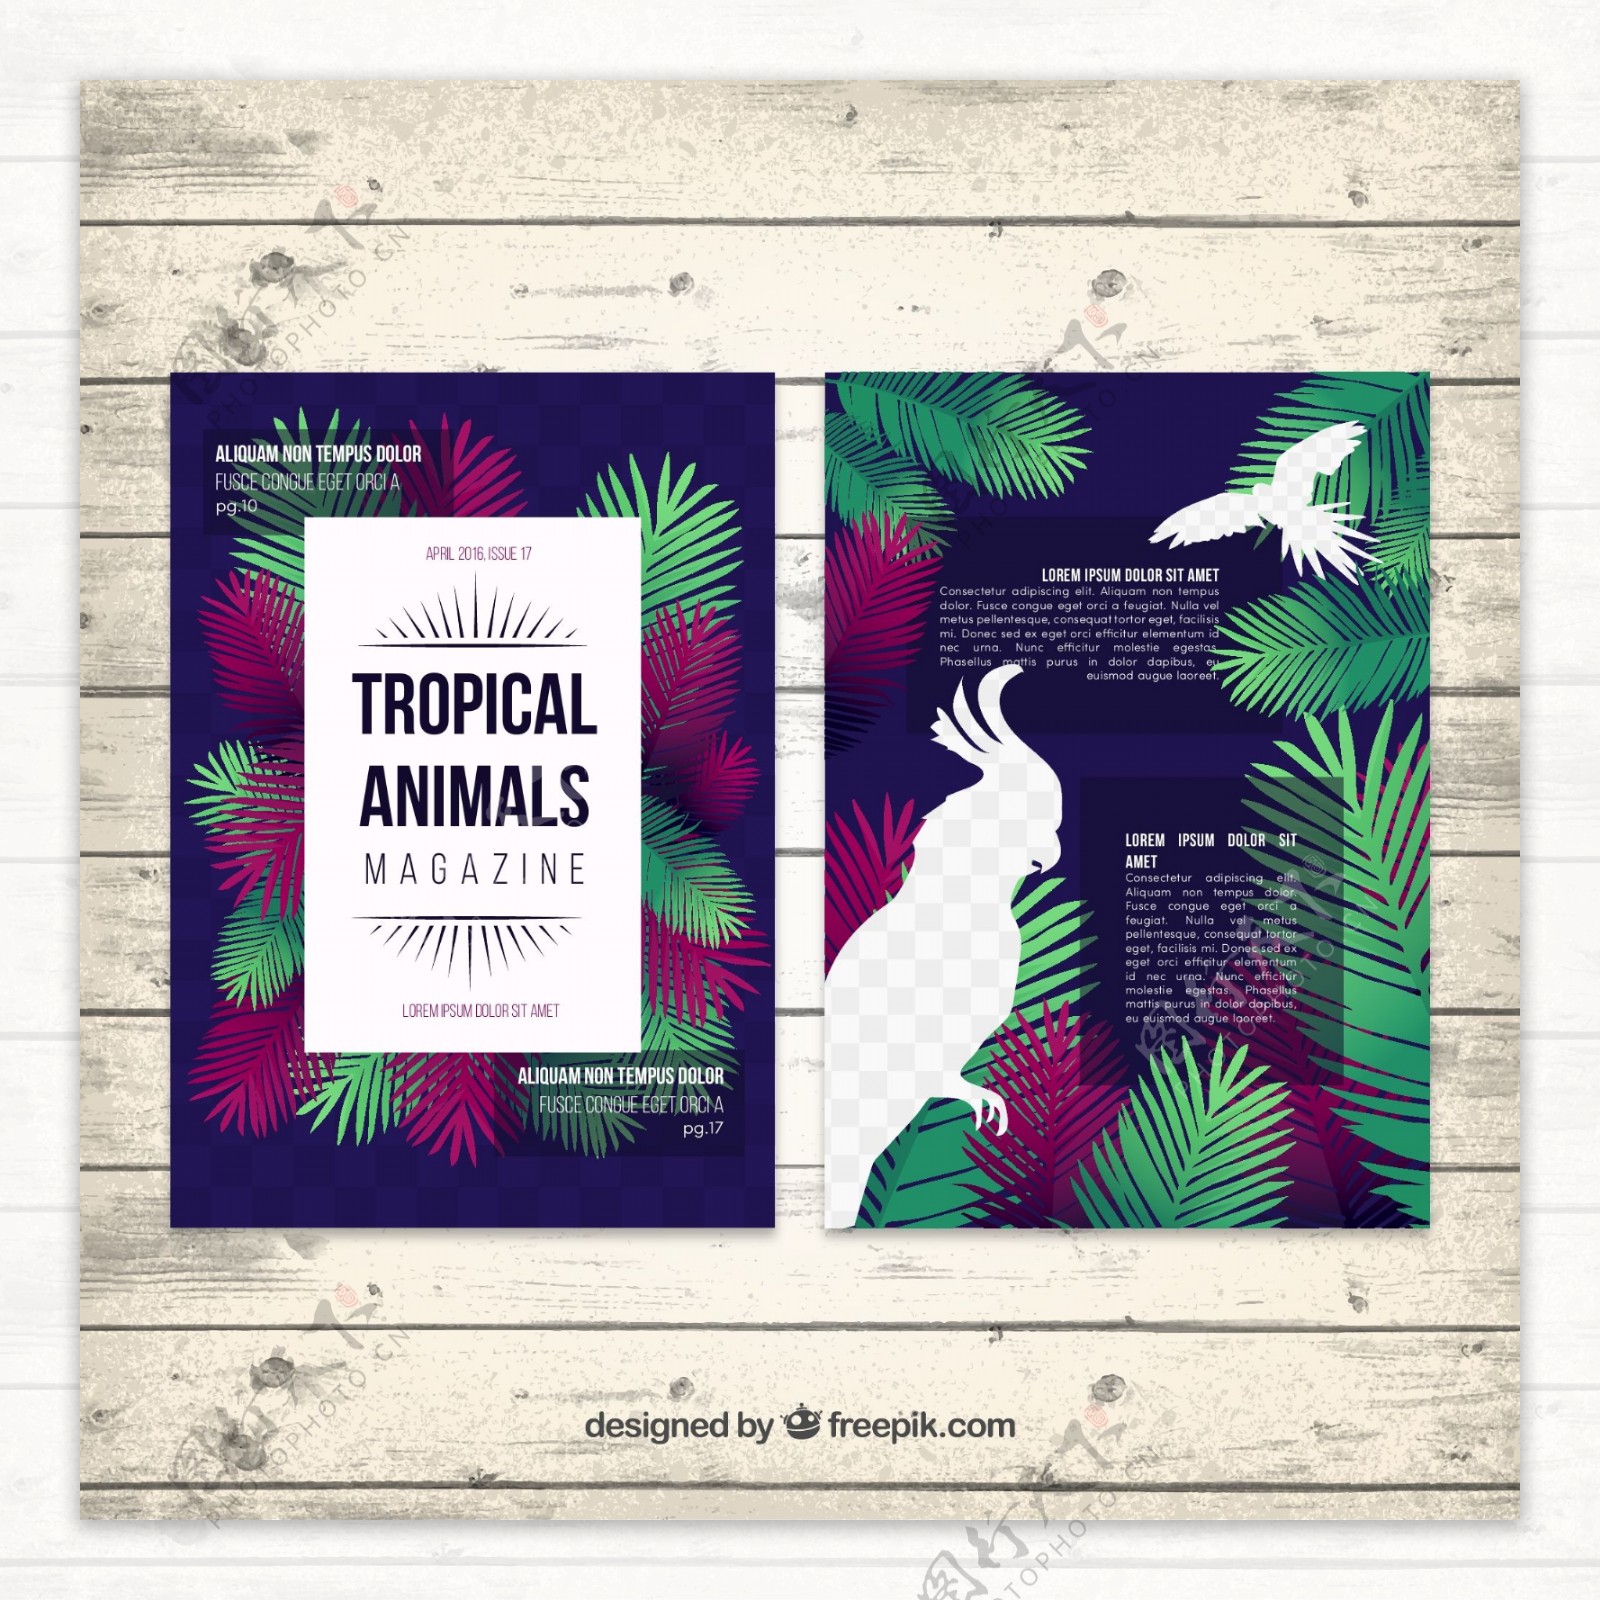 创意热带动物杂志内页矢量素材